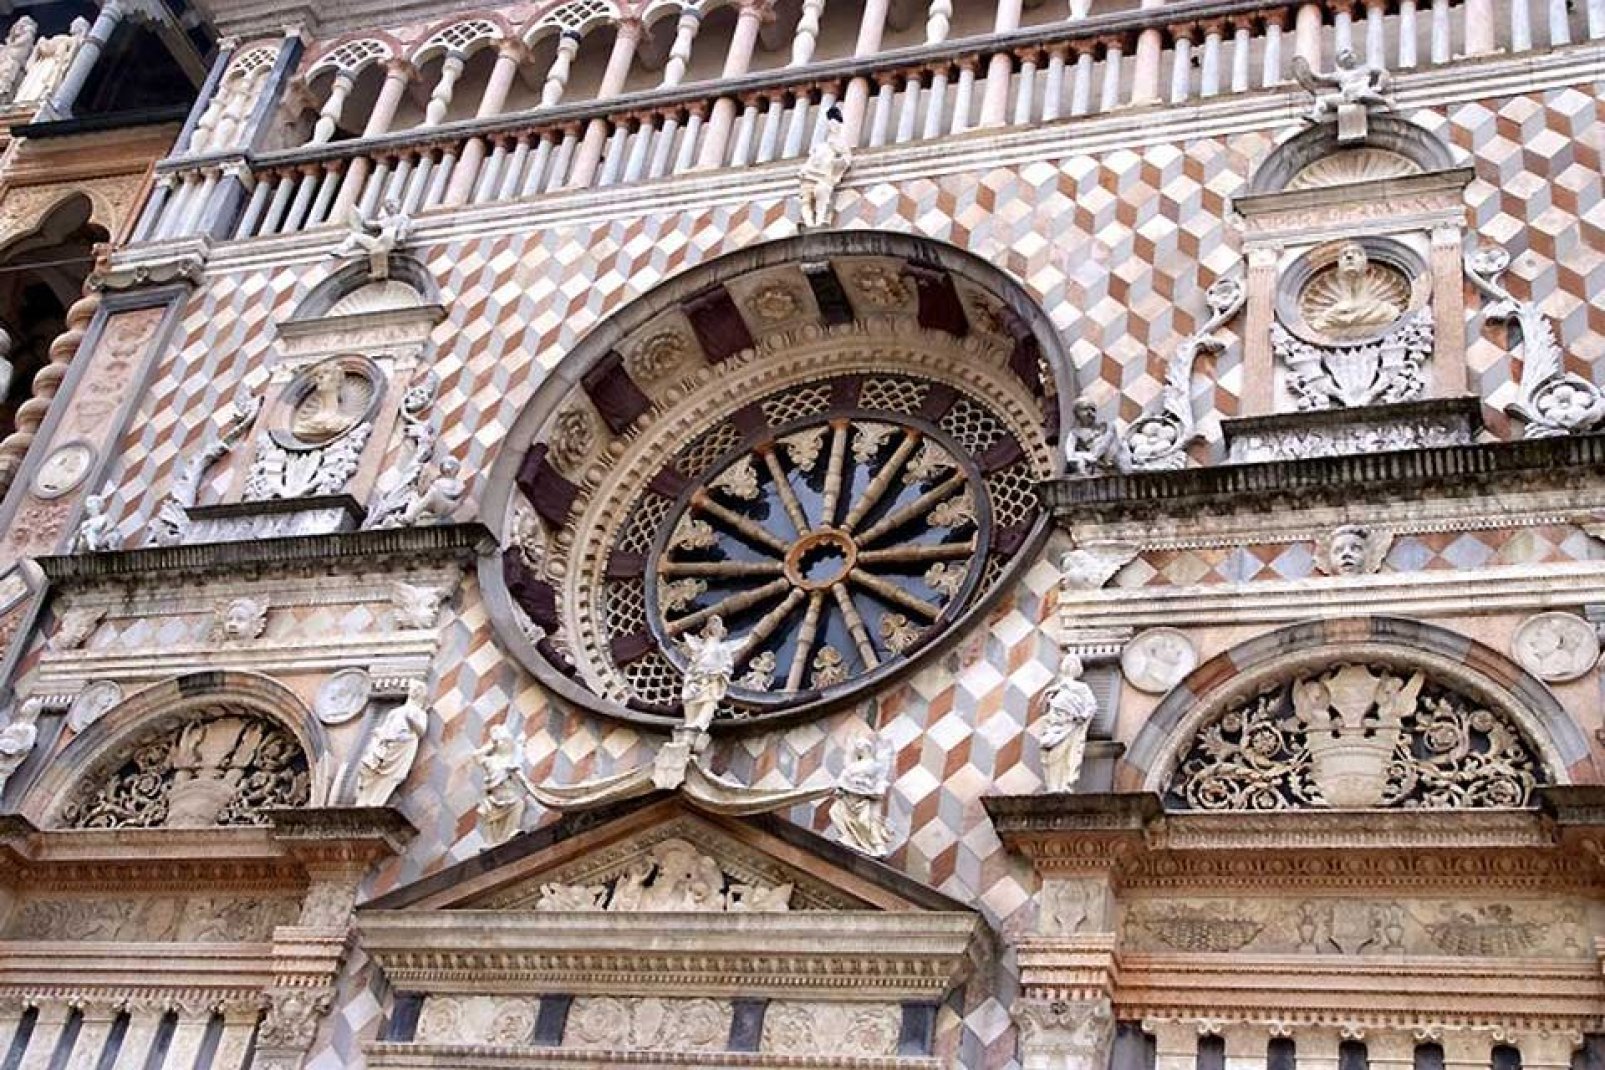 Die Colleoni-Kapelle ist ein Juwel der Renaissance und liegt direkt neben der Basilika Santa Maria Maggiore. Das Bauwerk wurde von Bartolomeo Colleoni in Auftrag gegeben und war als Mausoleum für ihn selbst sowie seine Tochter vorgesehen.